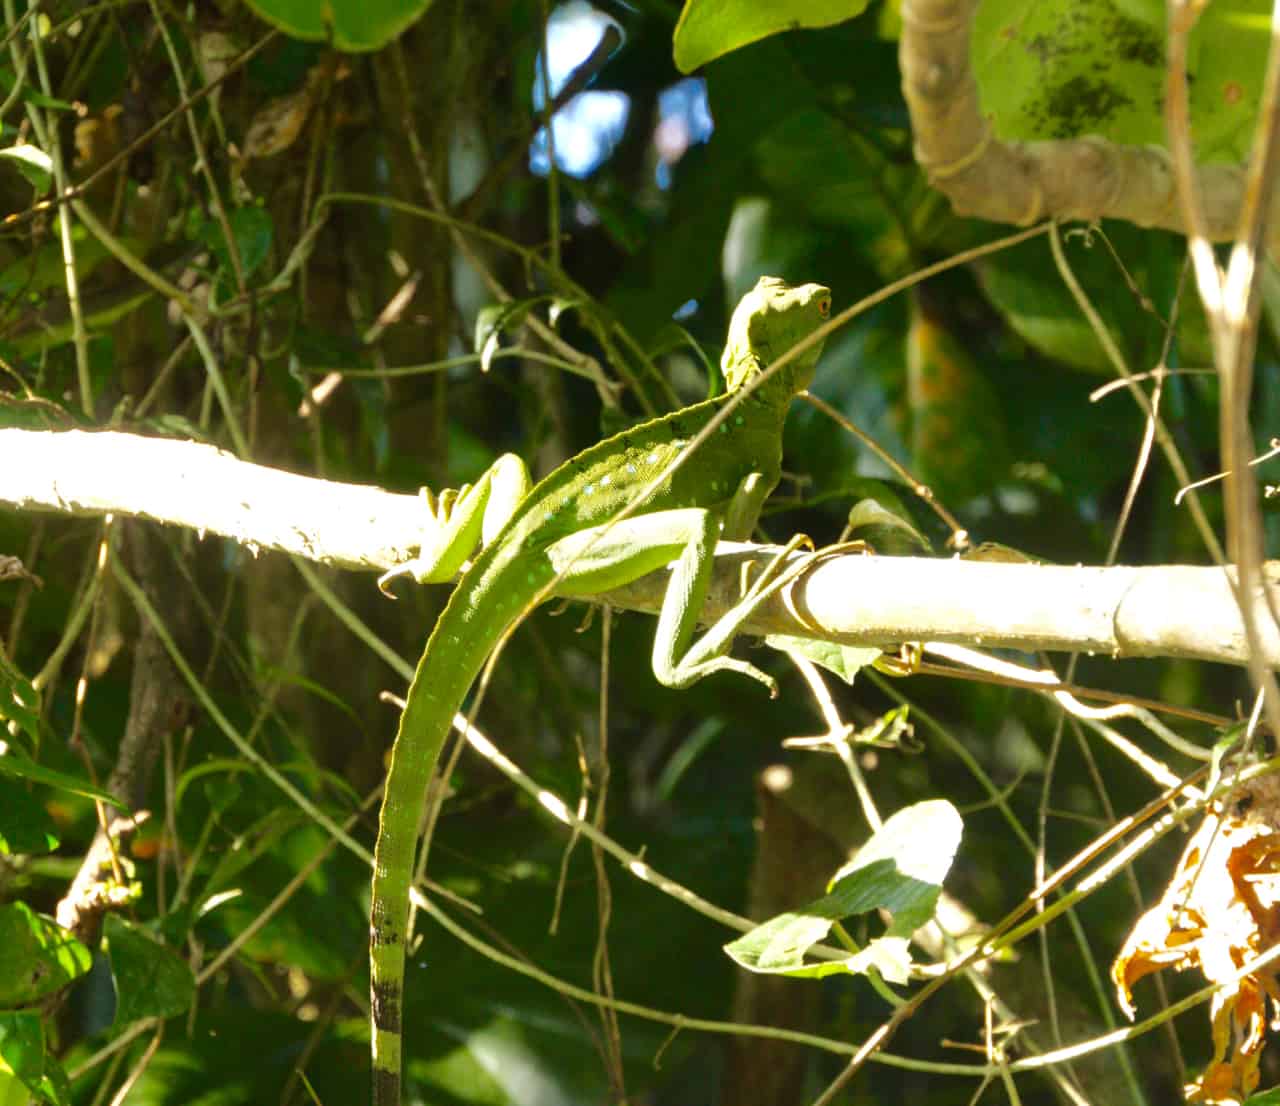 naarasbasiliski lepää oksalla Tortuguerossa, joka on Costa Rican biodiversiteettisimpiä puistoja.